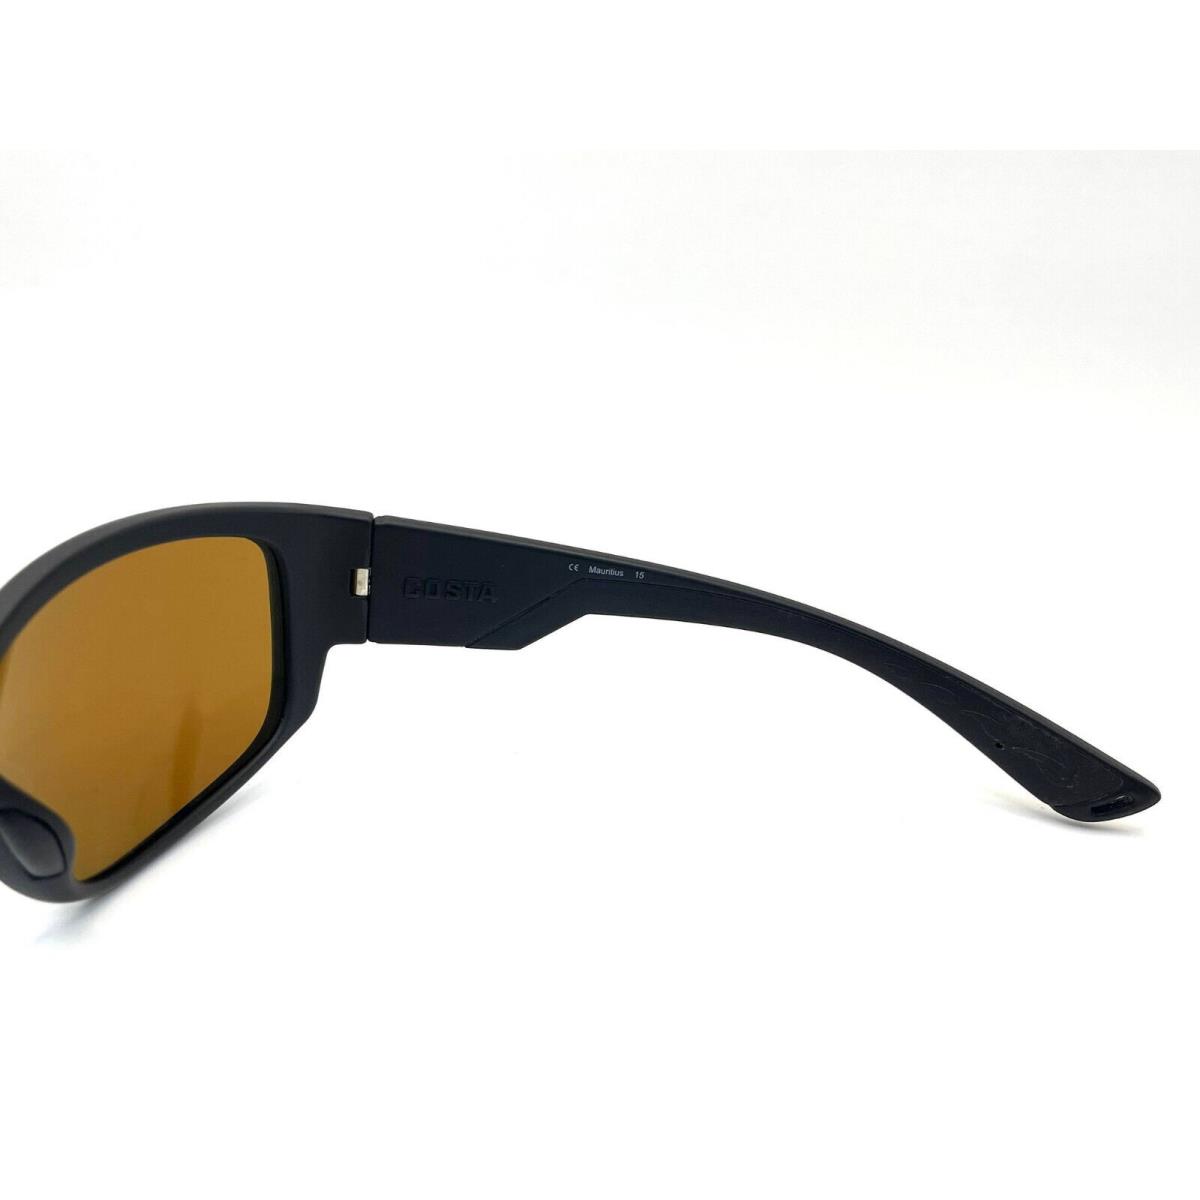 Costa Del Mar sunglasses Luke - Frame: Blackout, Lens: Green Mirror 400Glass 4